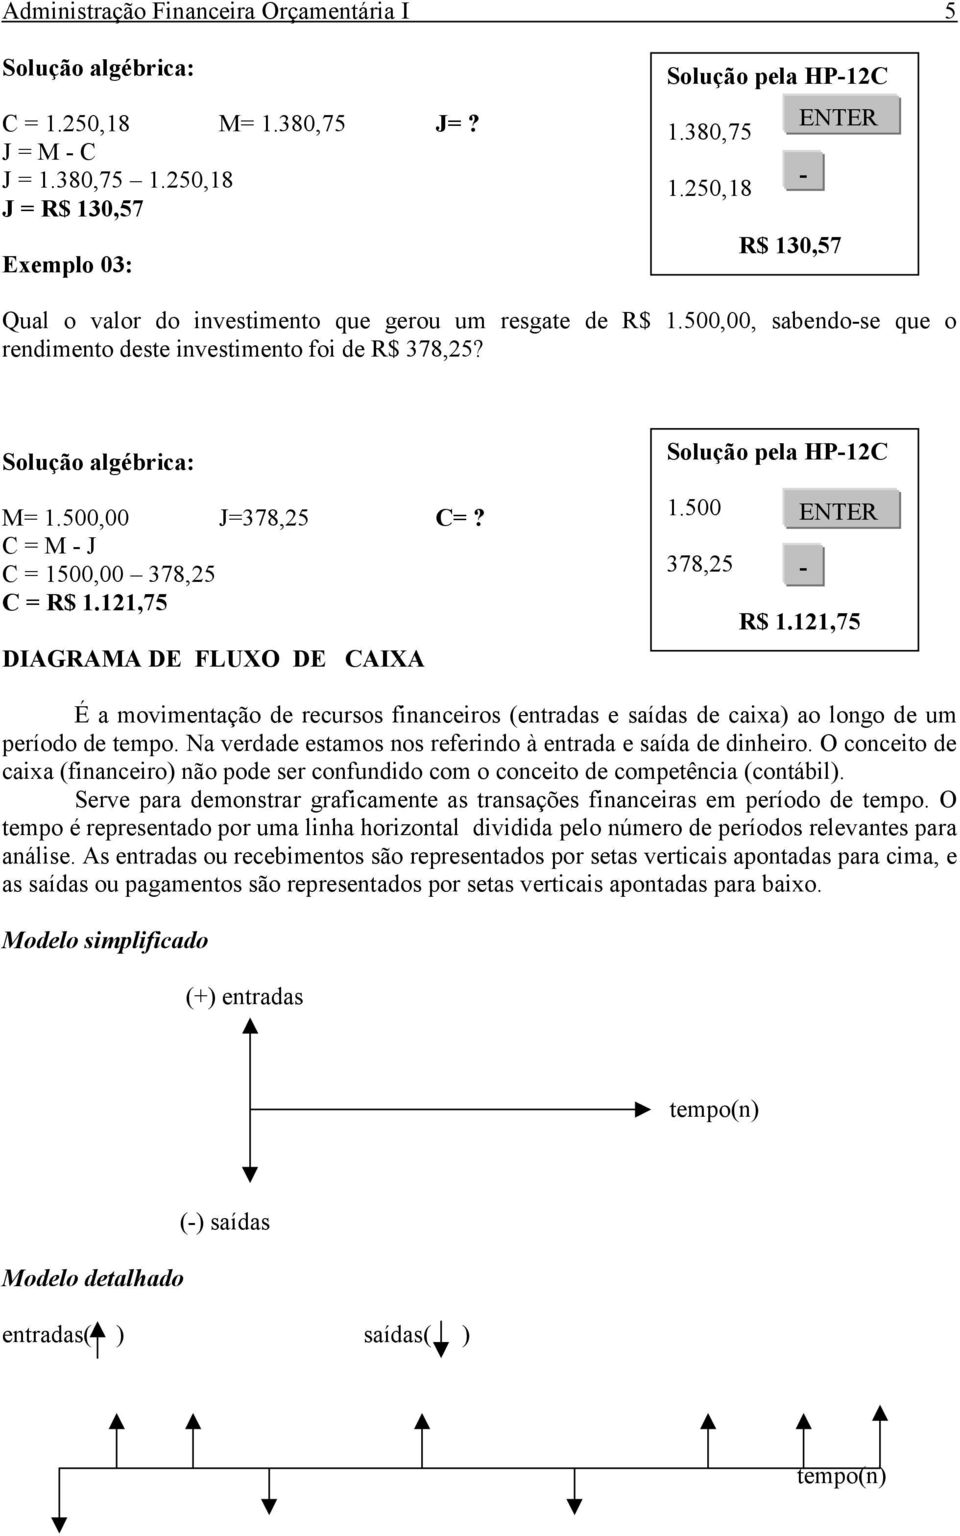 C = M - J C = 1500,00 378,25 C = R$ 1.121,75 DIAGRAMA DE FLUXO DE CAIXA Solução pela HP-12C 1.500 ENTER 378,25 - R$ 1.